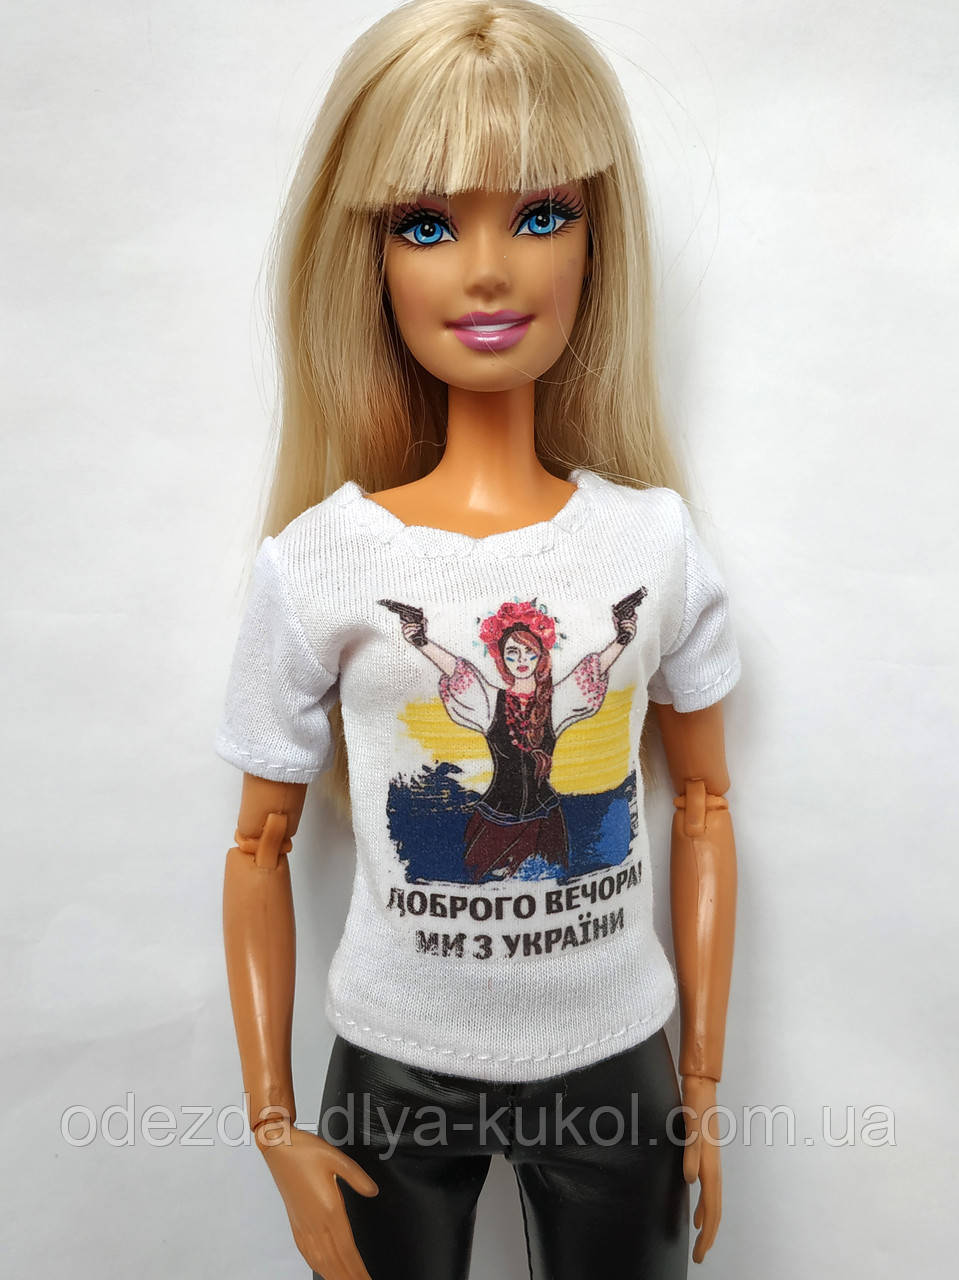 Одяг для ляльок Барбі  - футболка